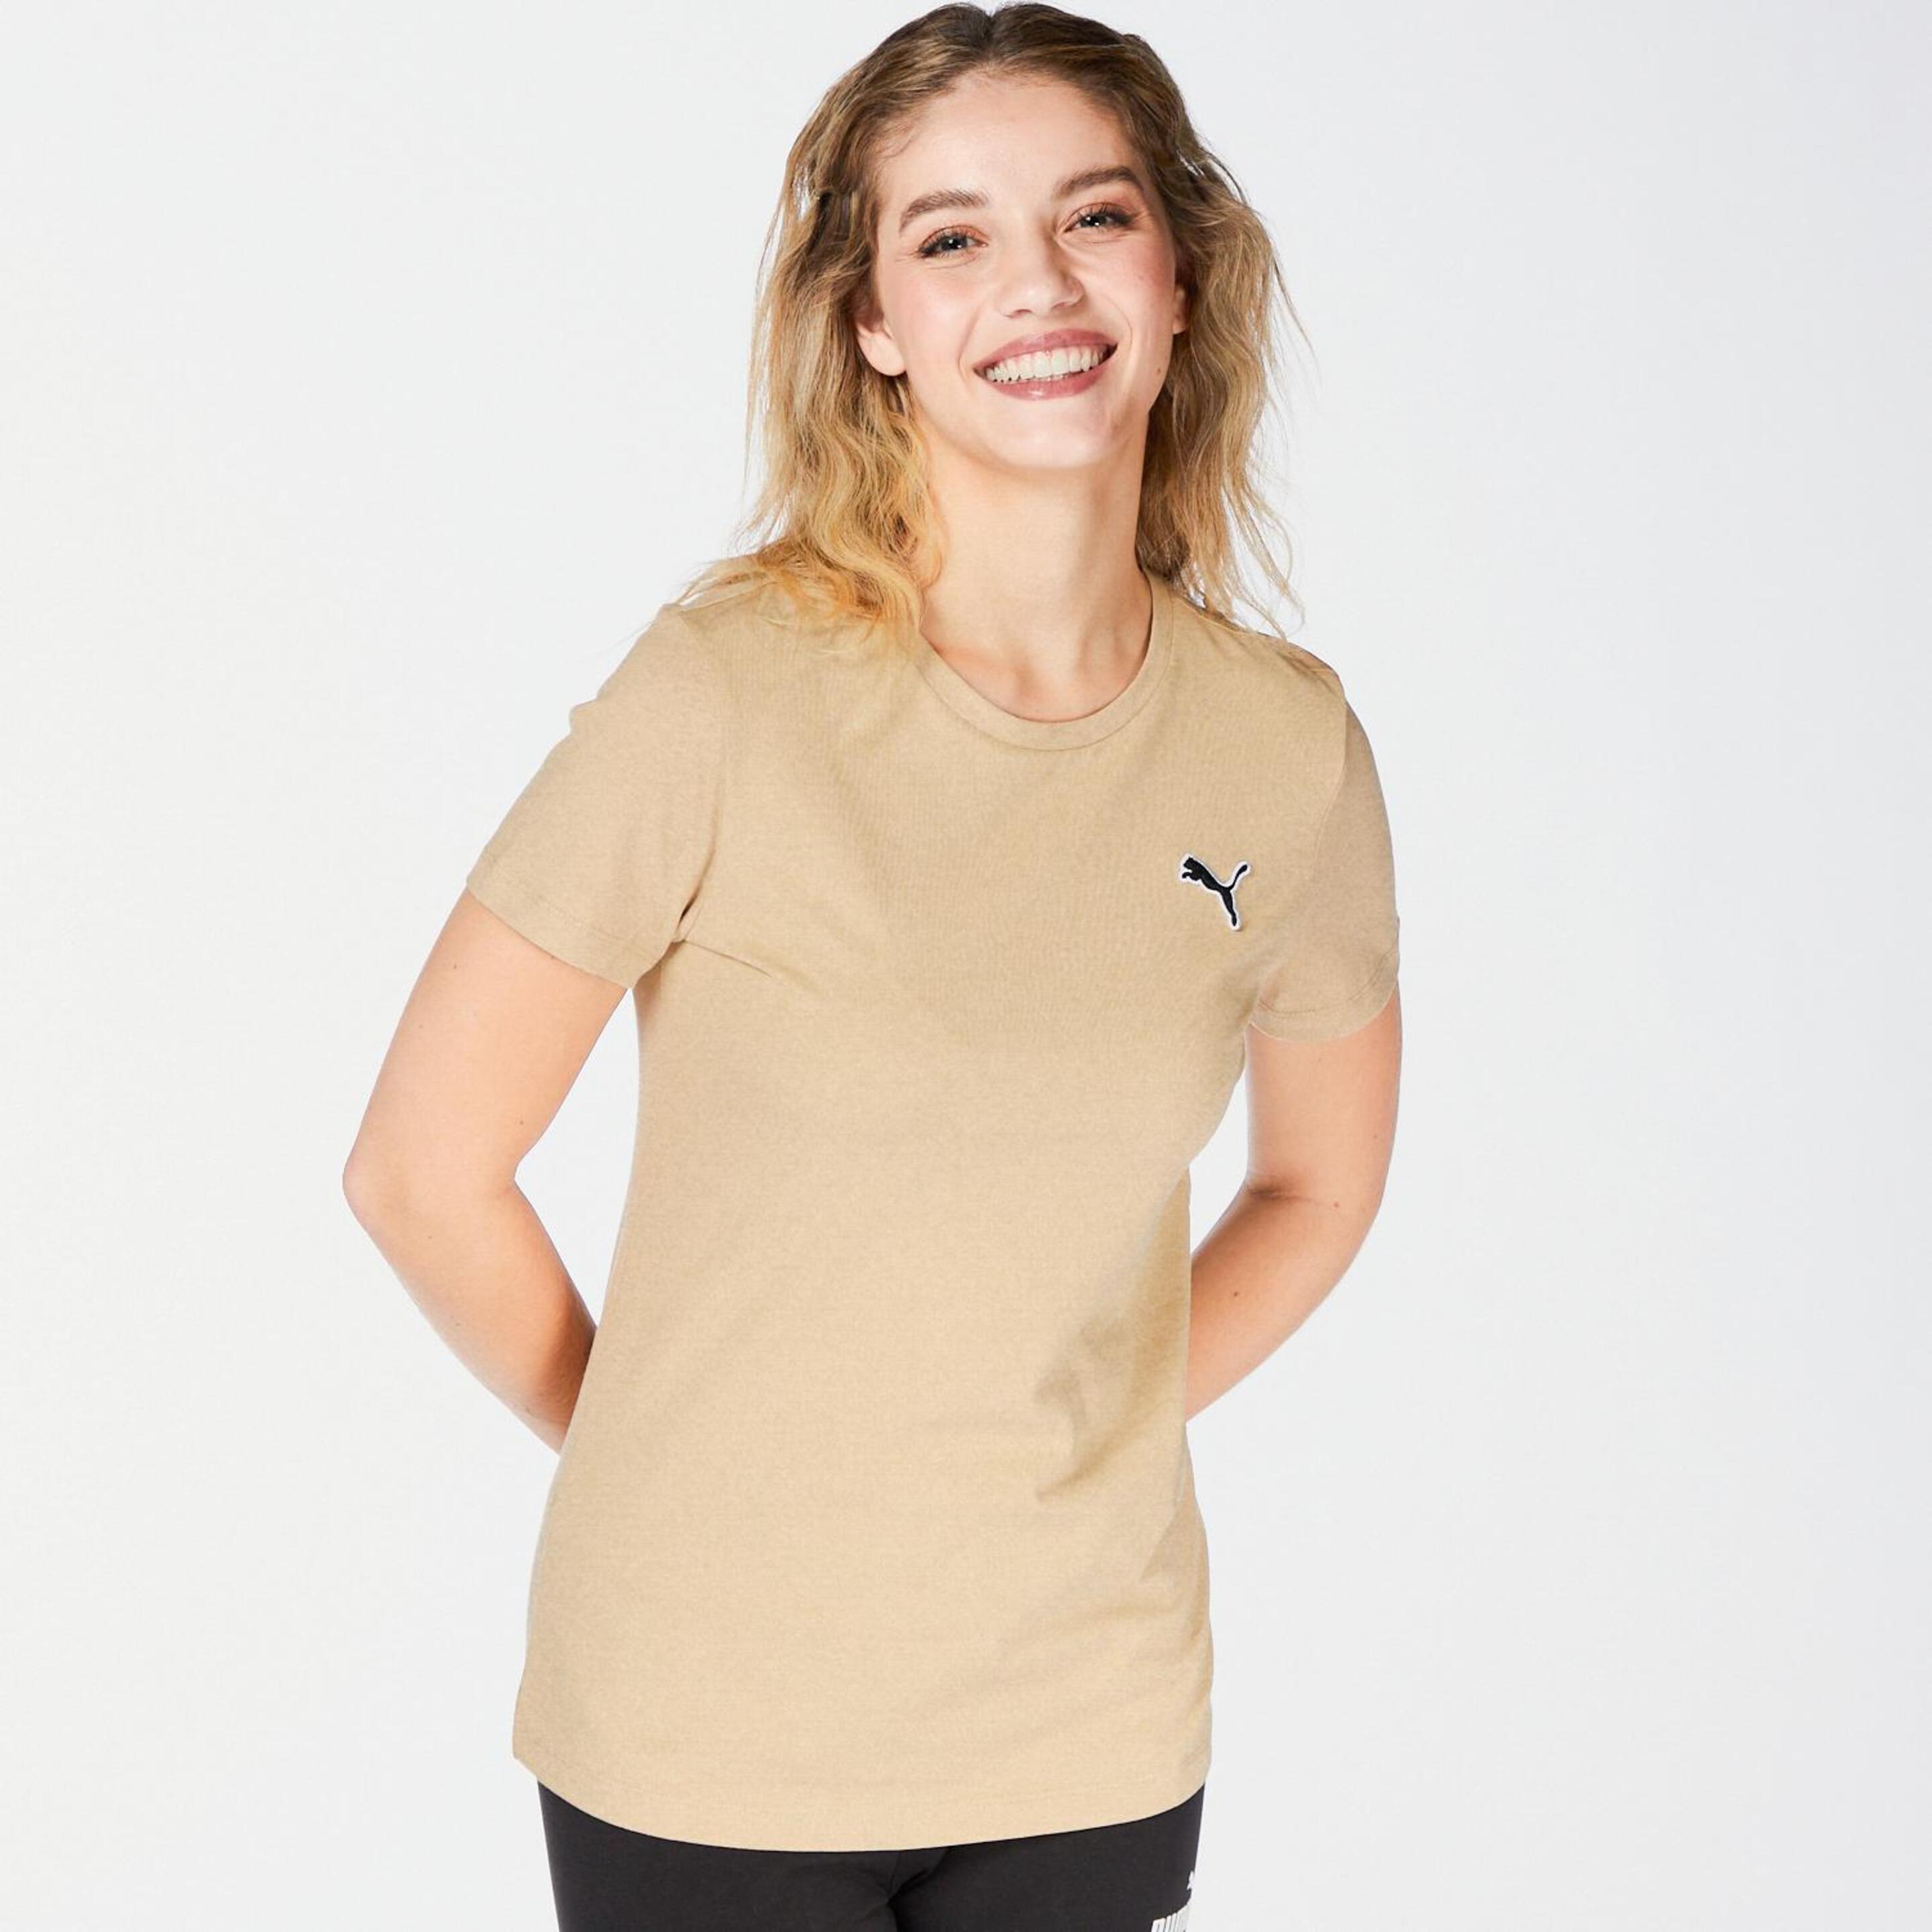 Puma Better Essentials - marron - Camiseta Mujer